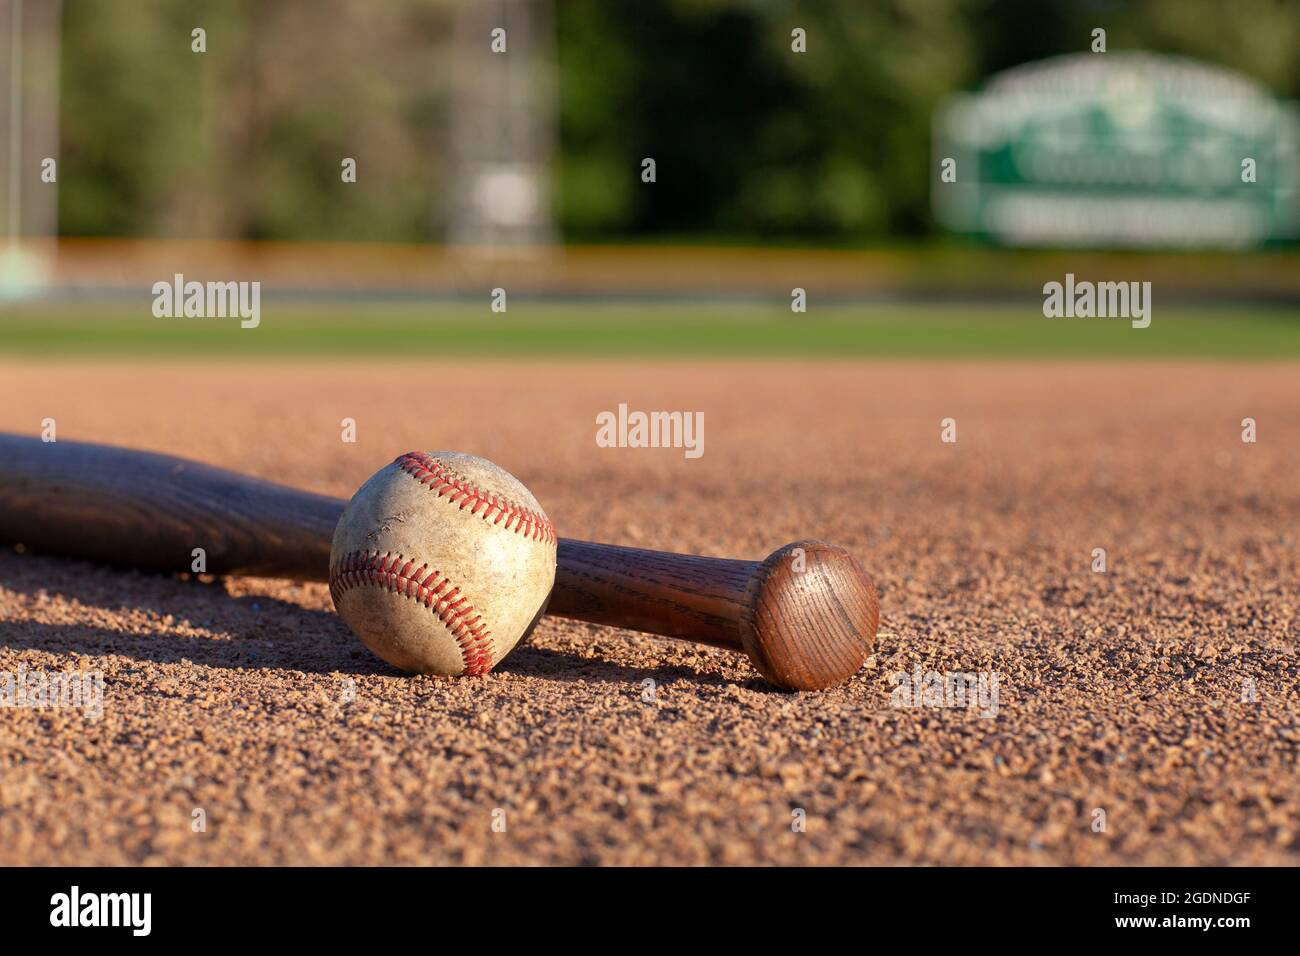 Terrain de base-ball et de chauve-souris, vue sélective de mise au point sur un terrain de base-ball Banque D'Images